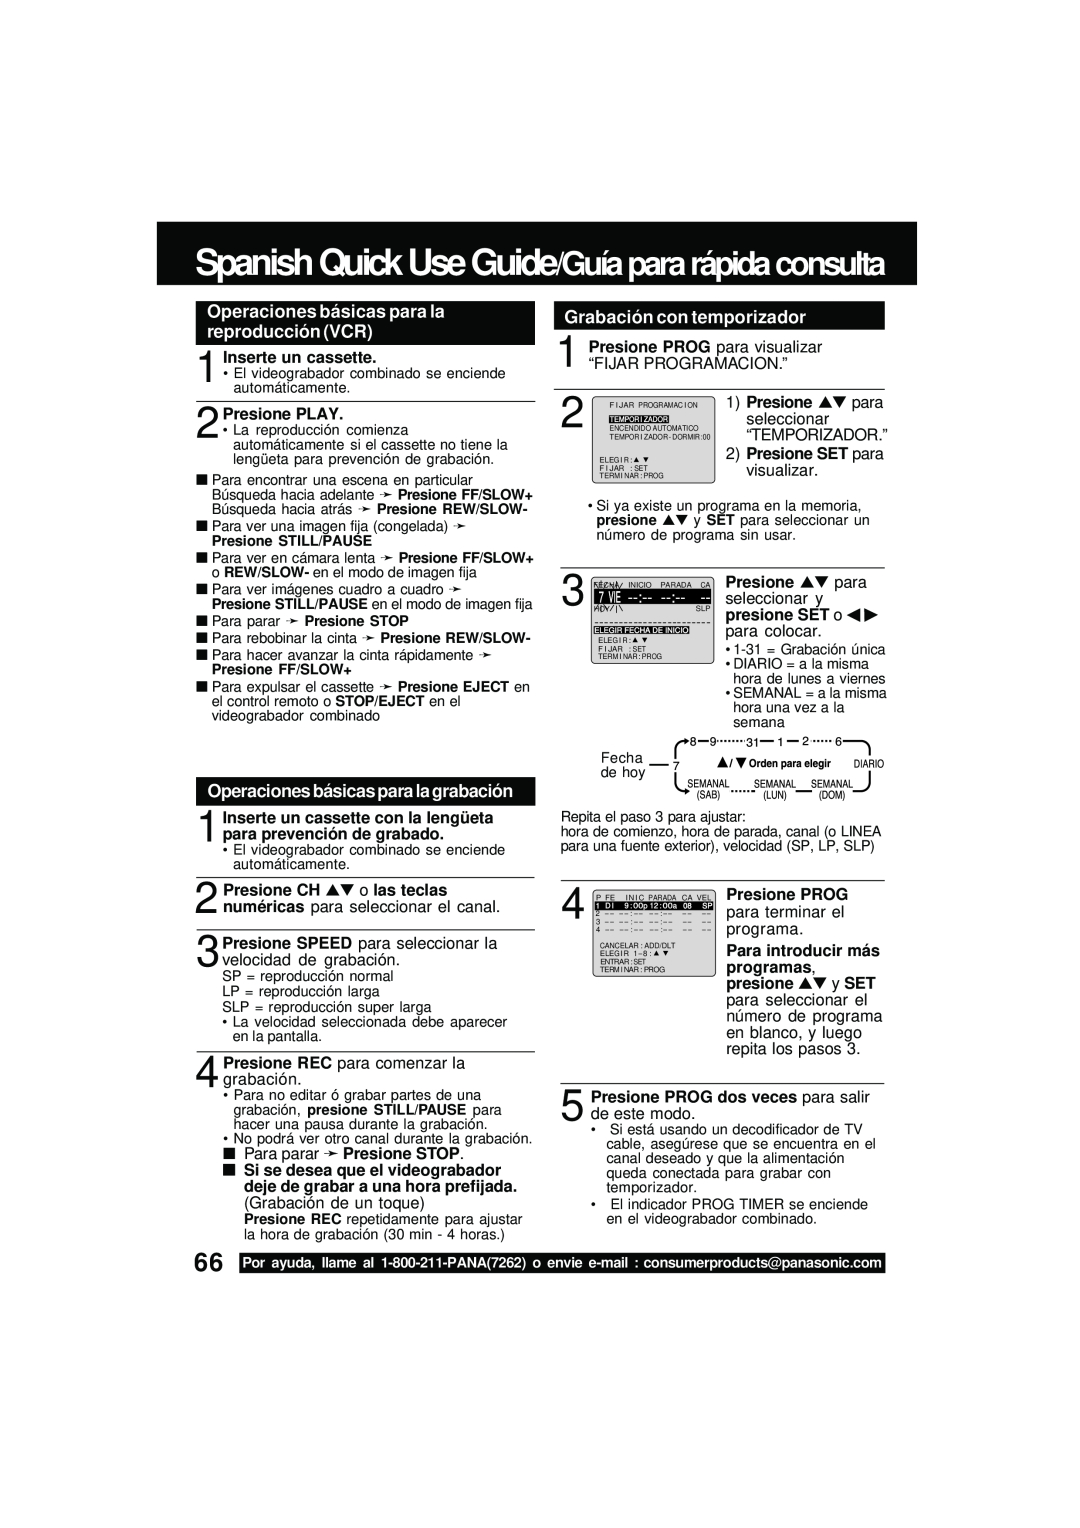 Panasonic PV DM2092 manual Spanish Quick Use Guide/Guía para rápida consulta, Operaciones básicas para la reproducción VCR 